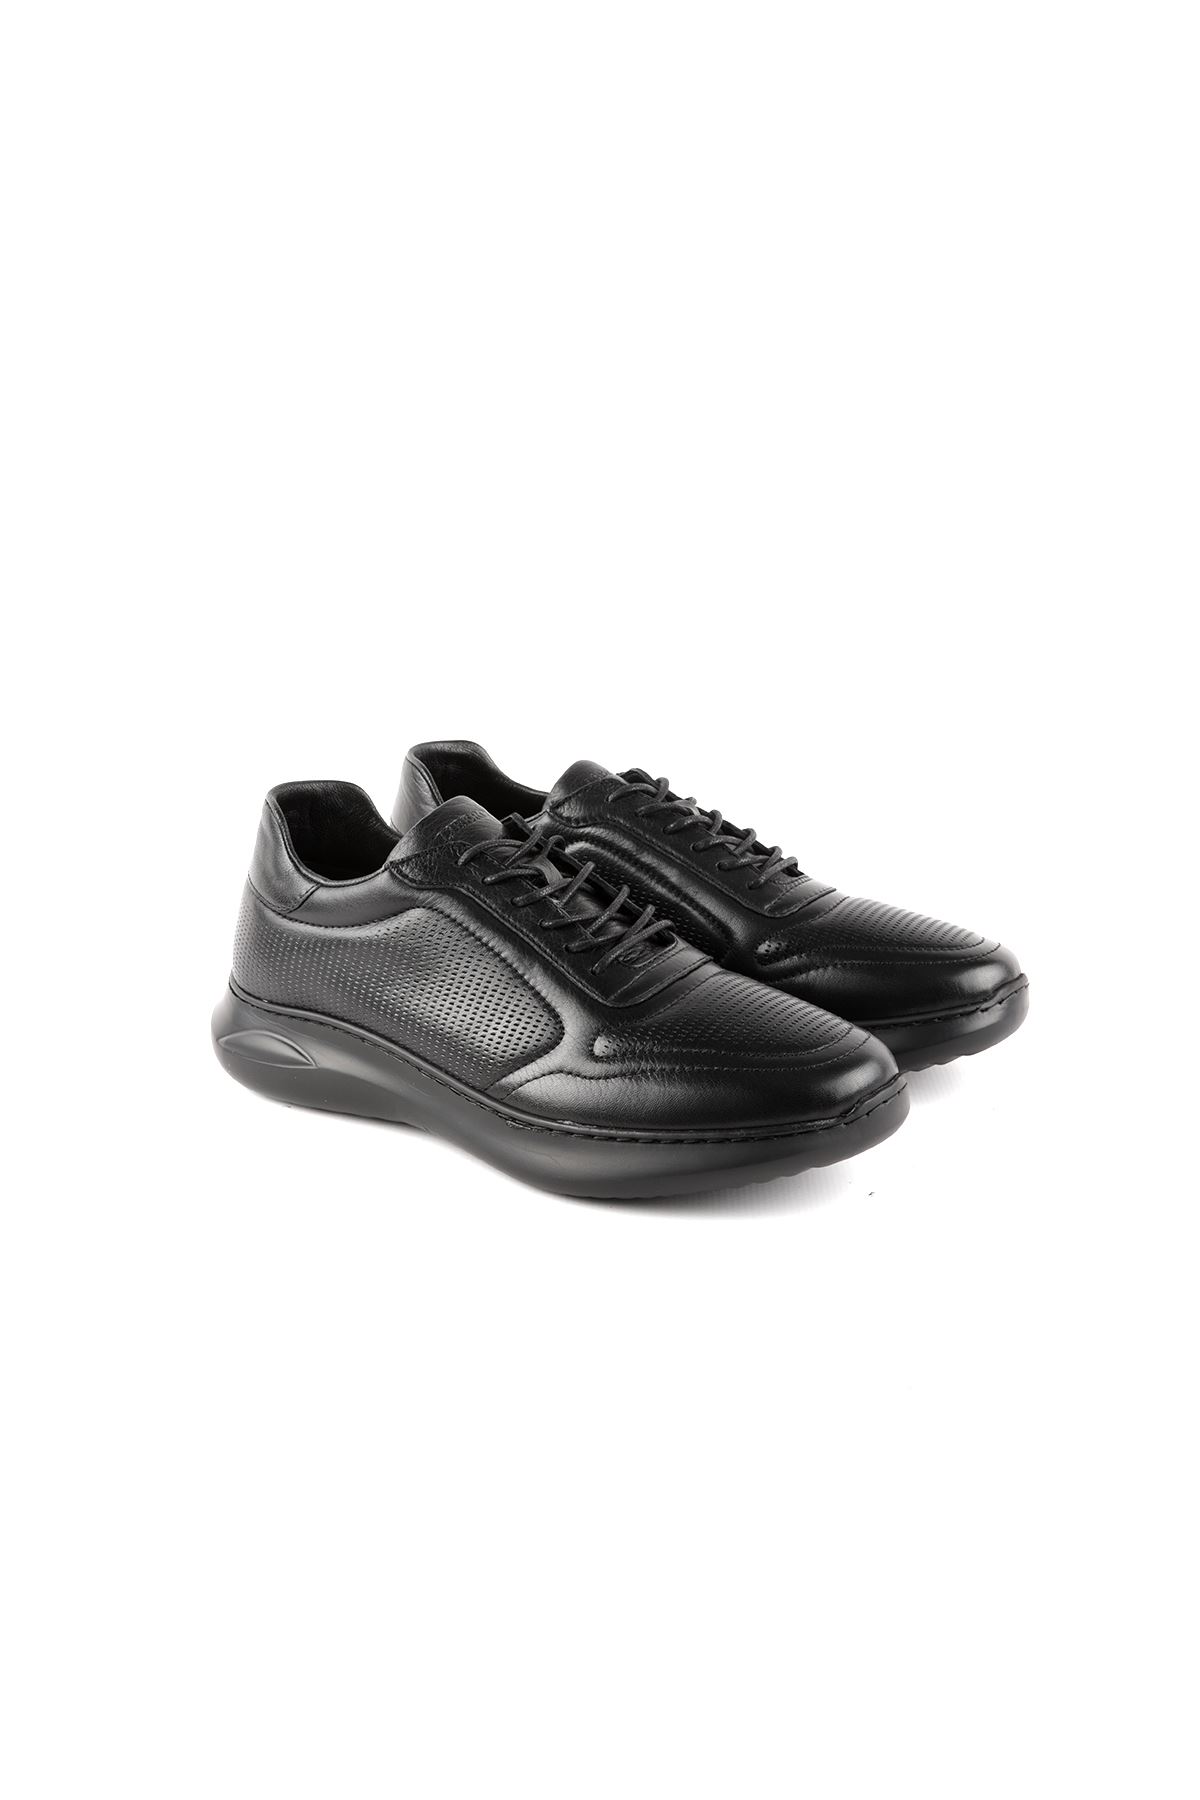 Libero L3778 Siyah Spor Erkek Ayakkabı 